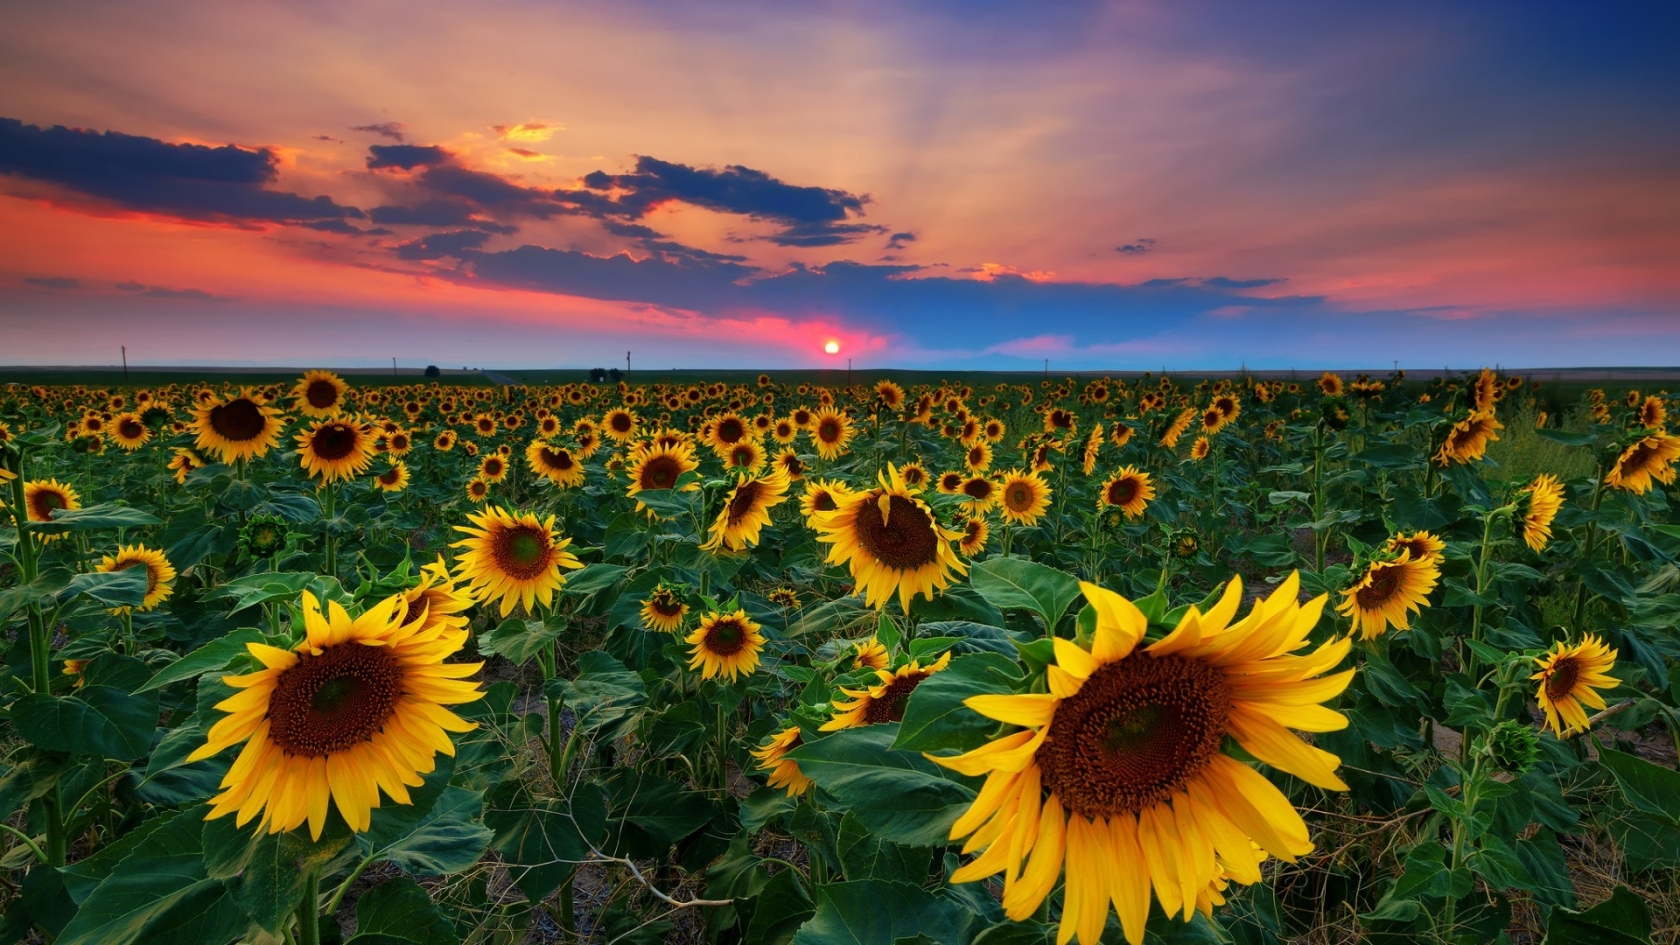 Denver Sunflowers Field for 1680 x 945 HDTV resolution